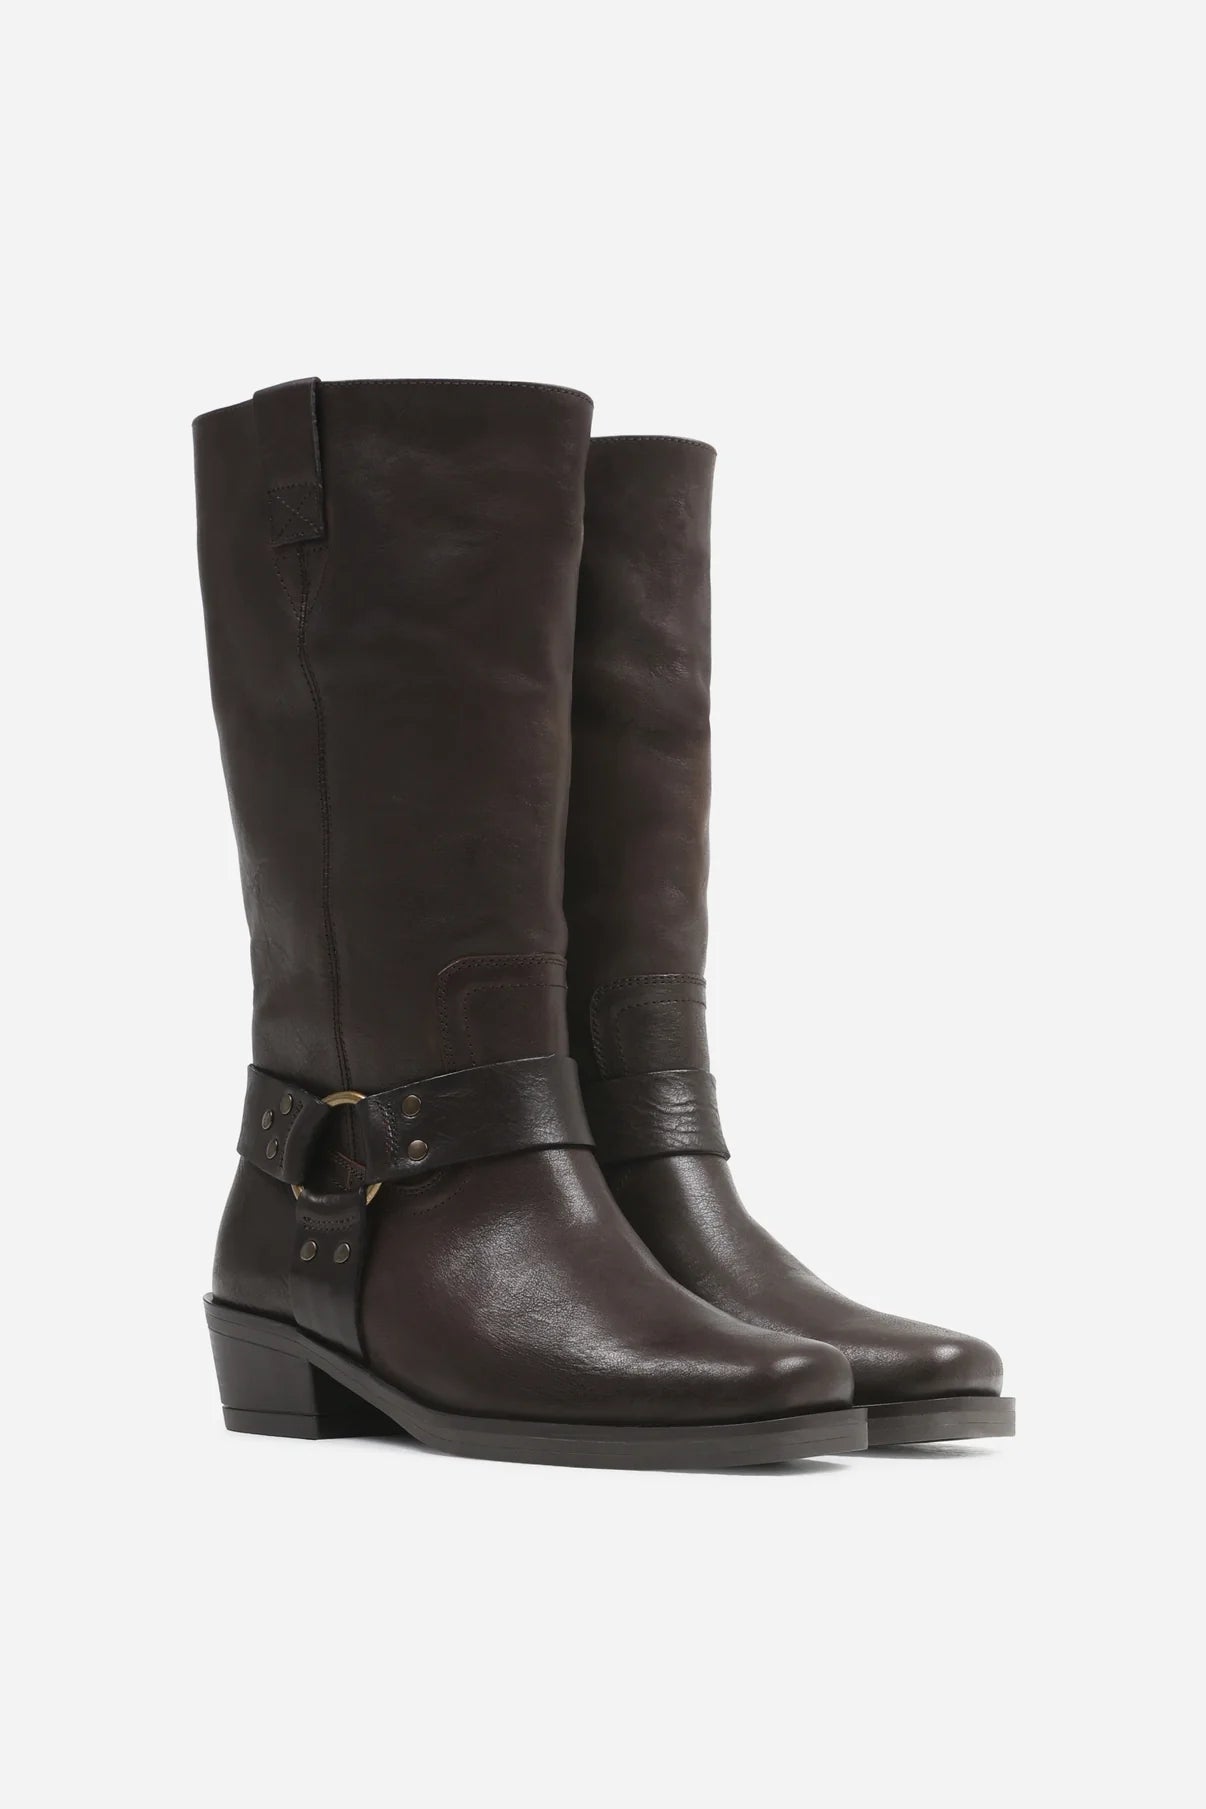 Trig-ger boots - dark brown